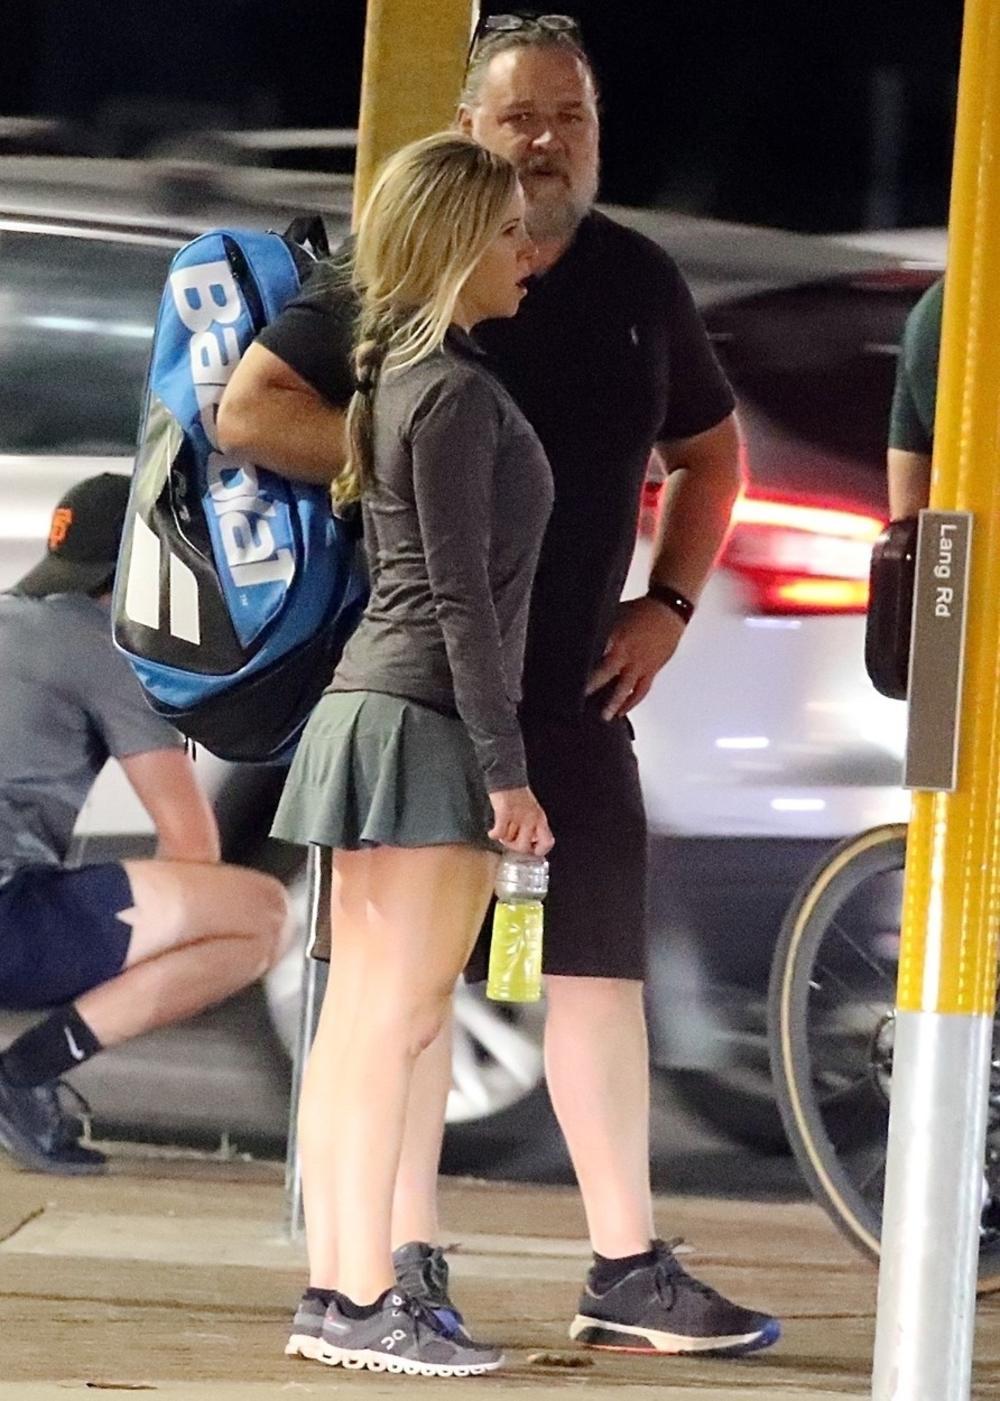 <p>Slavni oskarovac ne pojavljuje se često na društvenim događajima u Australiji, ali je tokom nedavno održanog Australijan opena napravio izuzetak i prvi put izašao u javnost s novom devojkom</p>